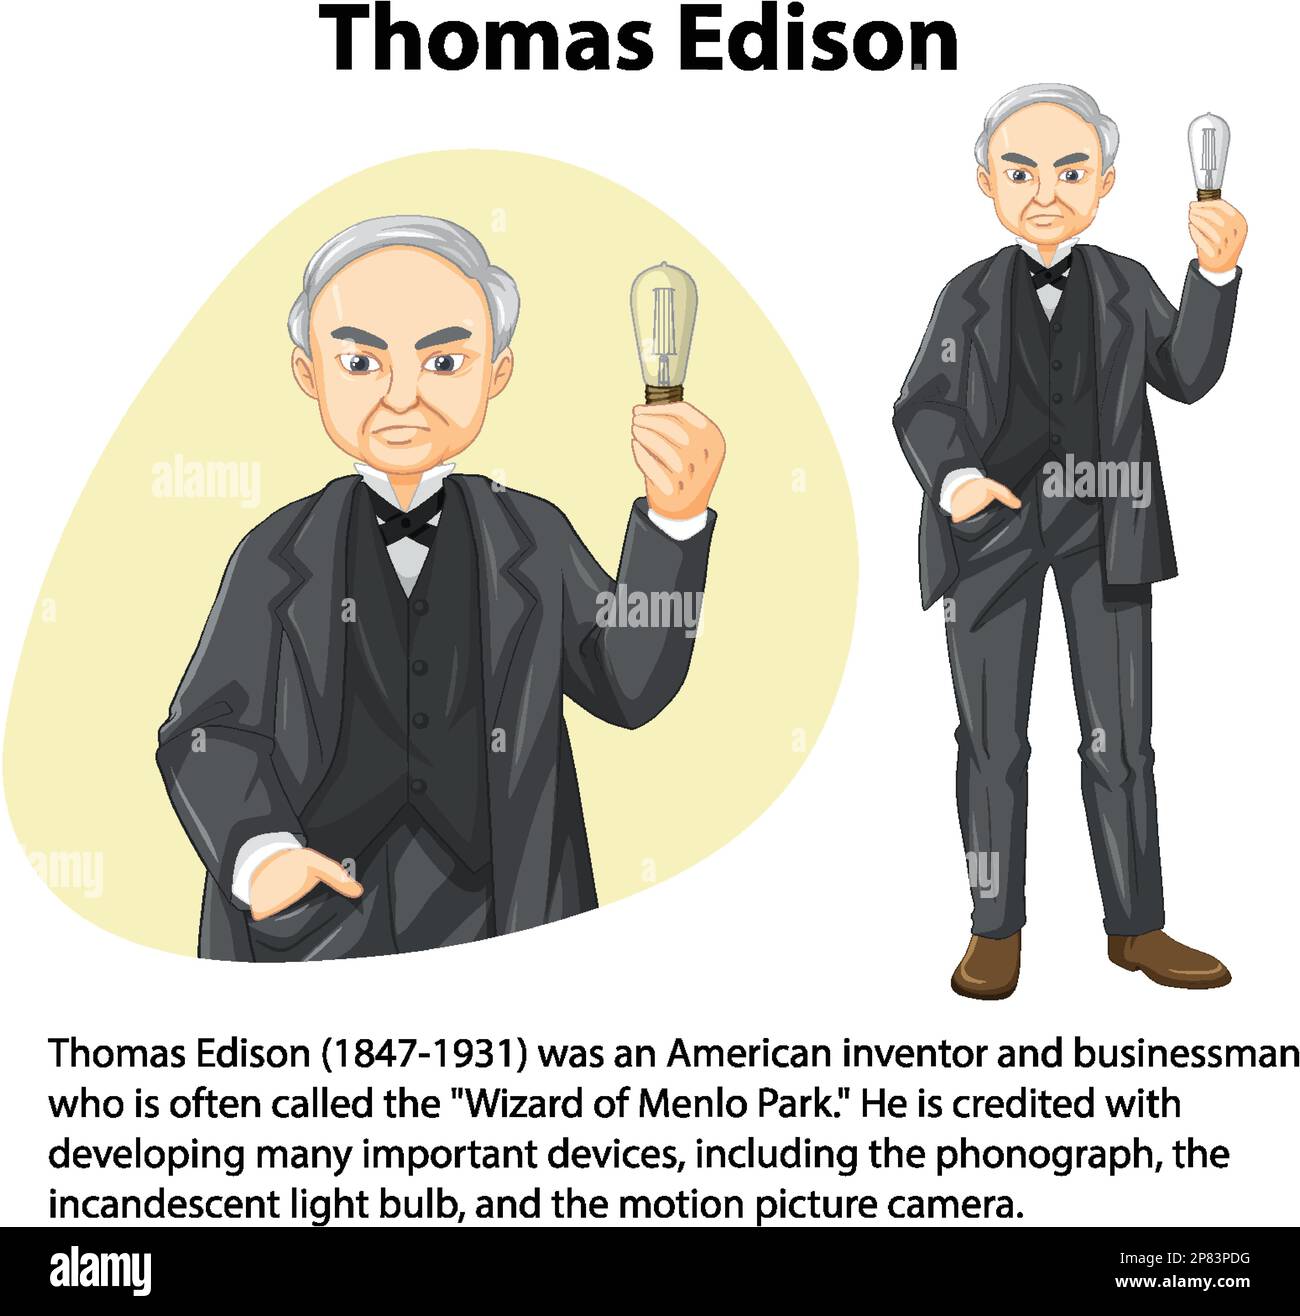 Biographie informative de l'illustration de Thomas Edison Illustration de Vecteur